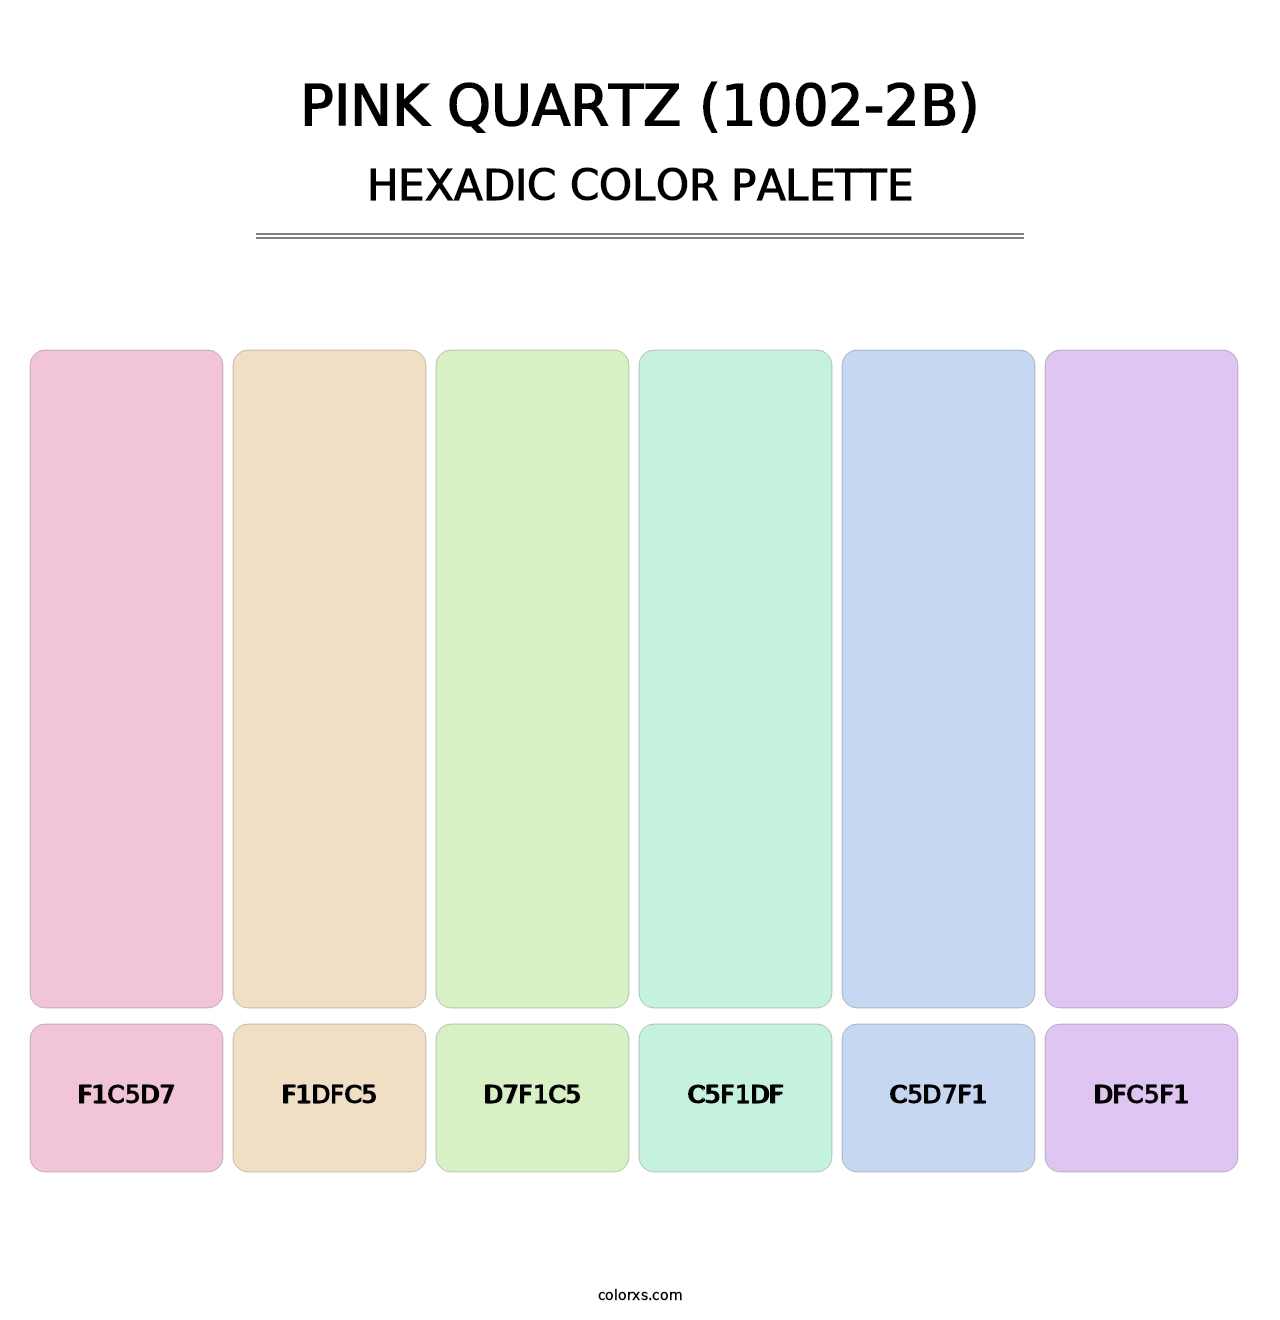 Pink Quartz (1002-2B) - Hexadic Color Palette